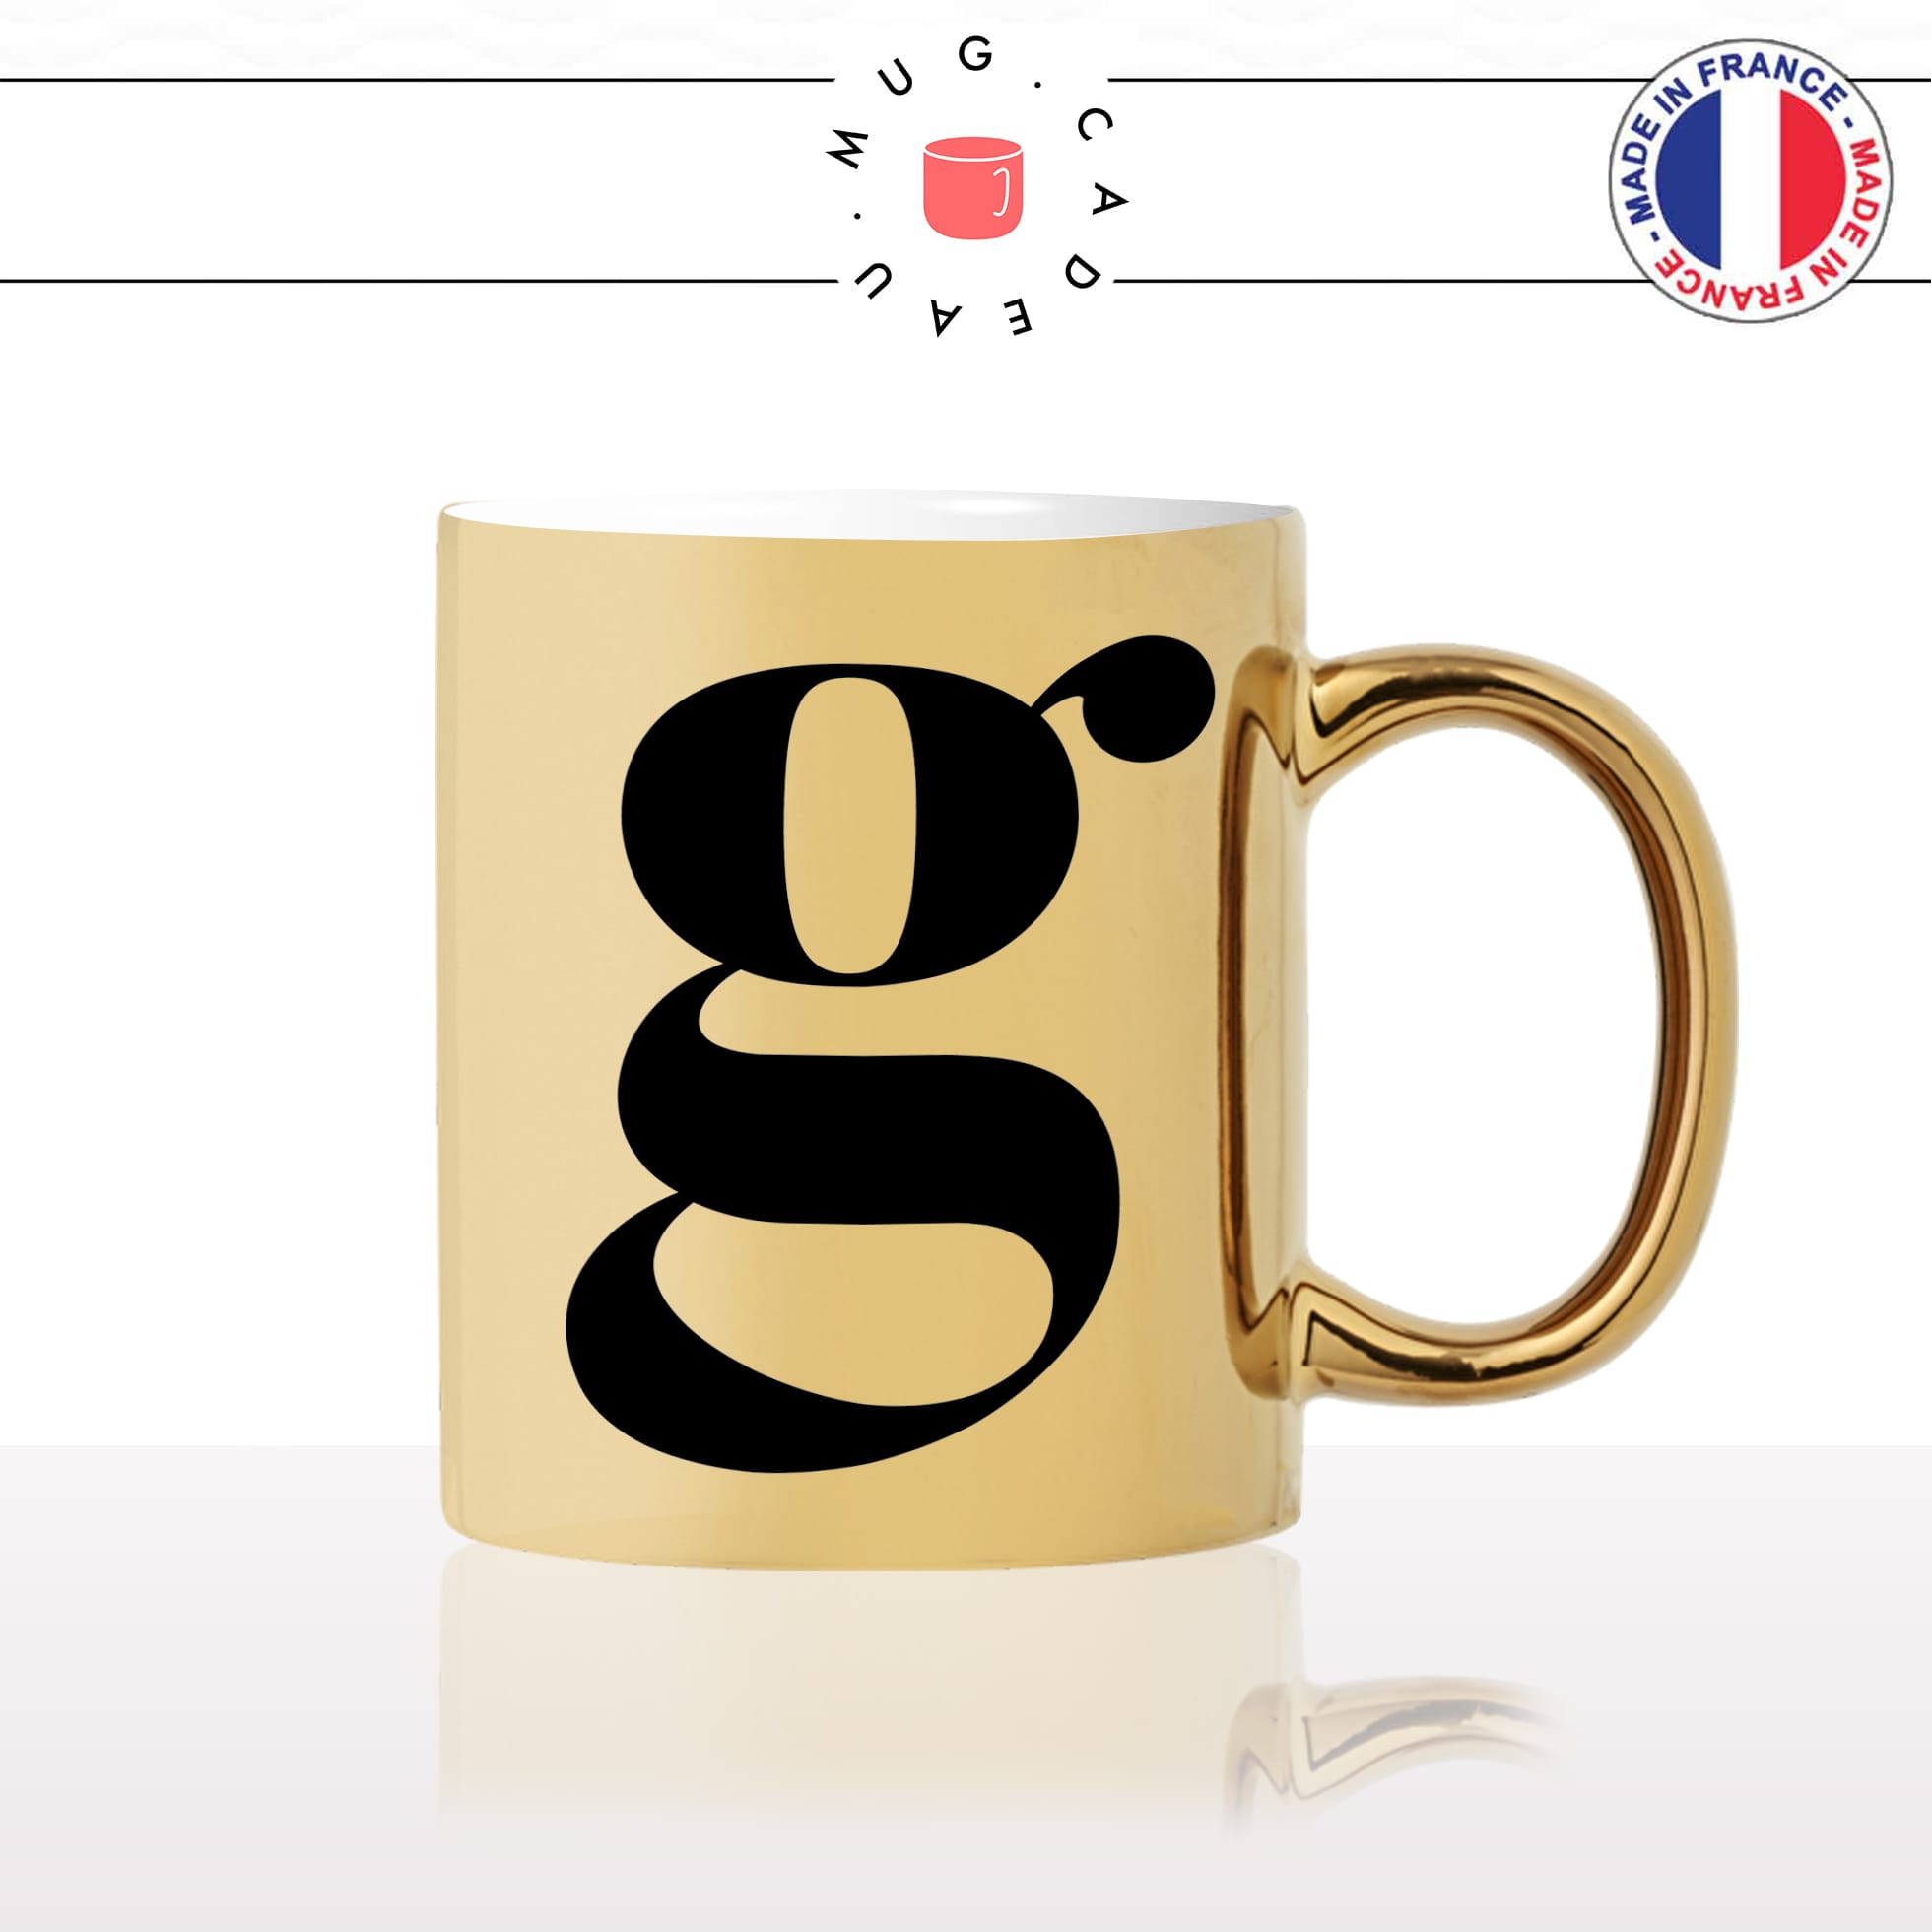 mug-tasse-or-doré-gold-lettre-initiale-calligraphie-fonte-ecriture-lettrine-g-prénom-idée-cadeau-fun-originale-personnalisée-café-thé-chocolat2-min